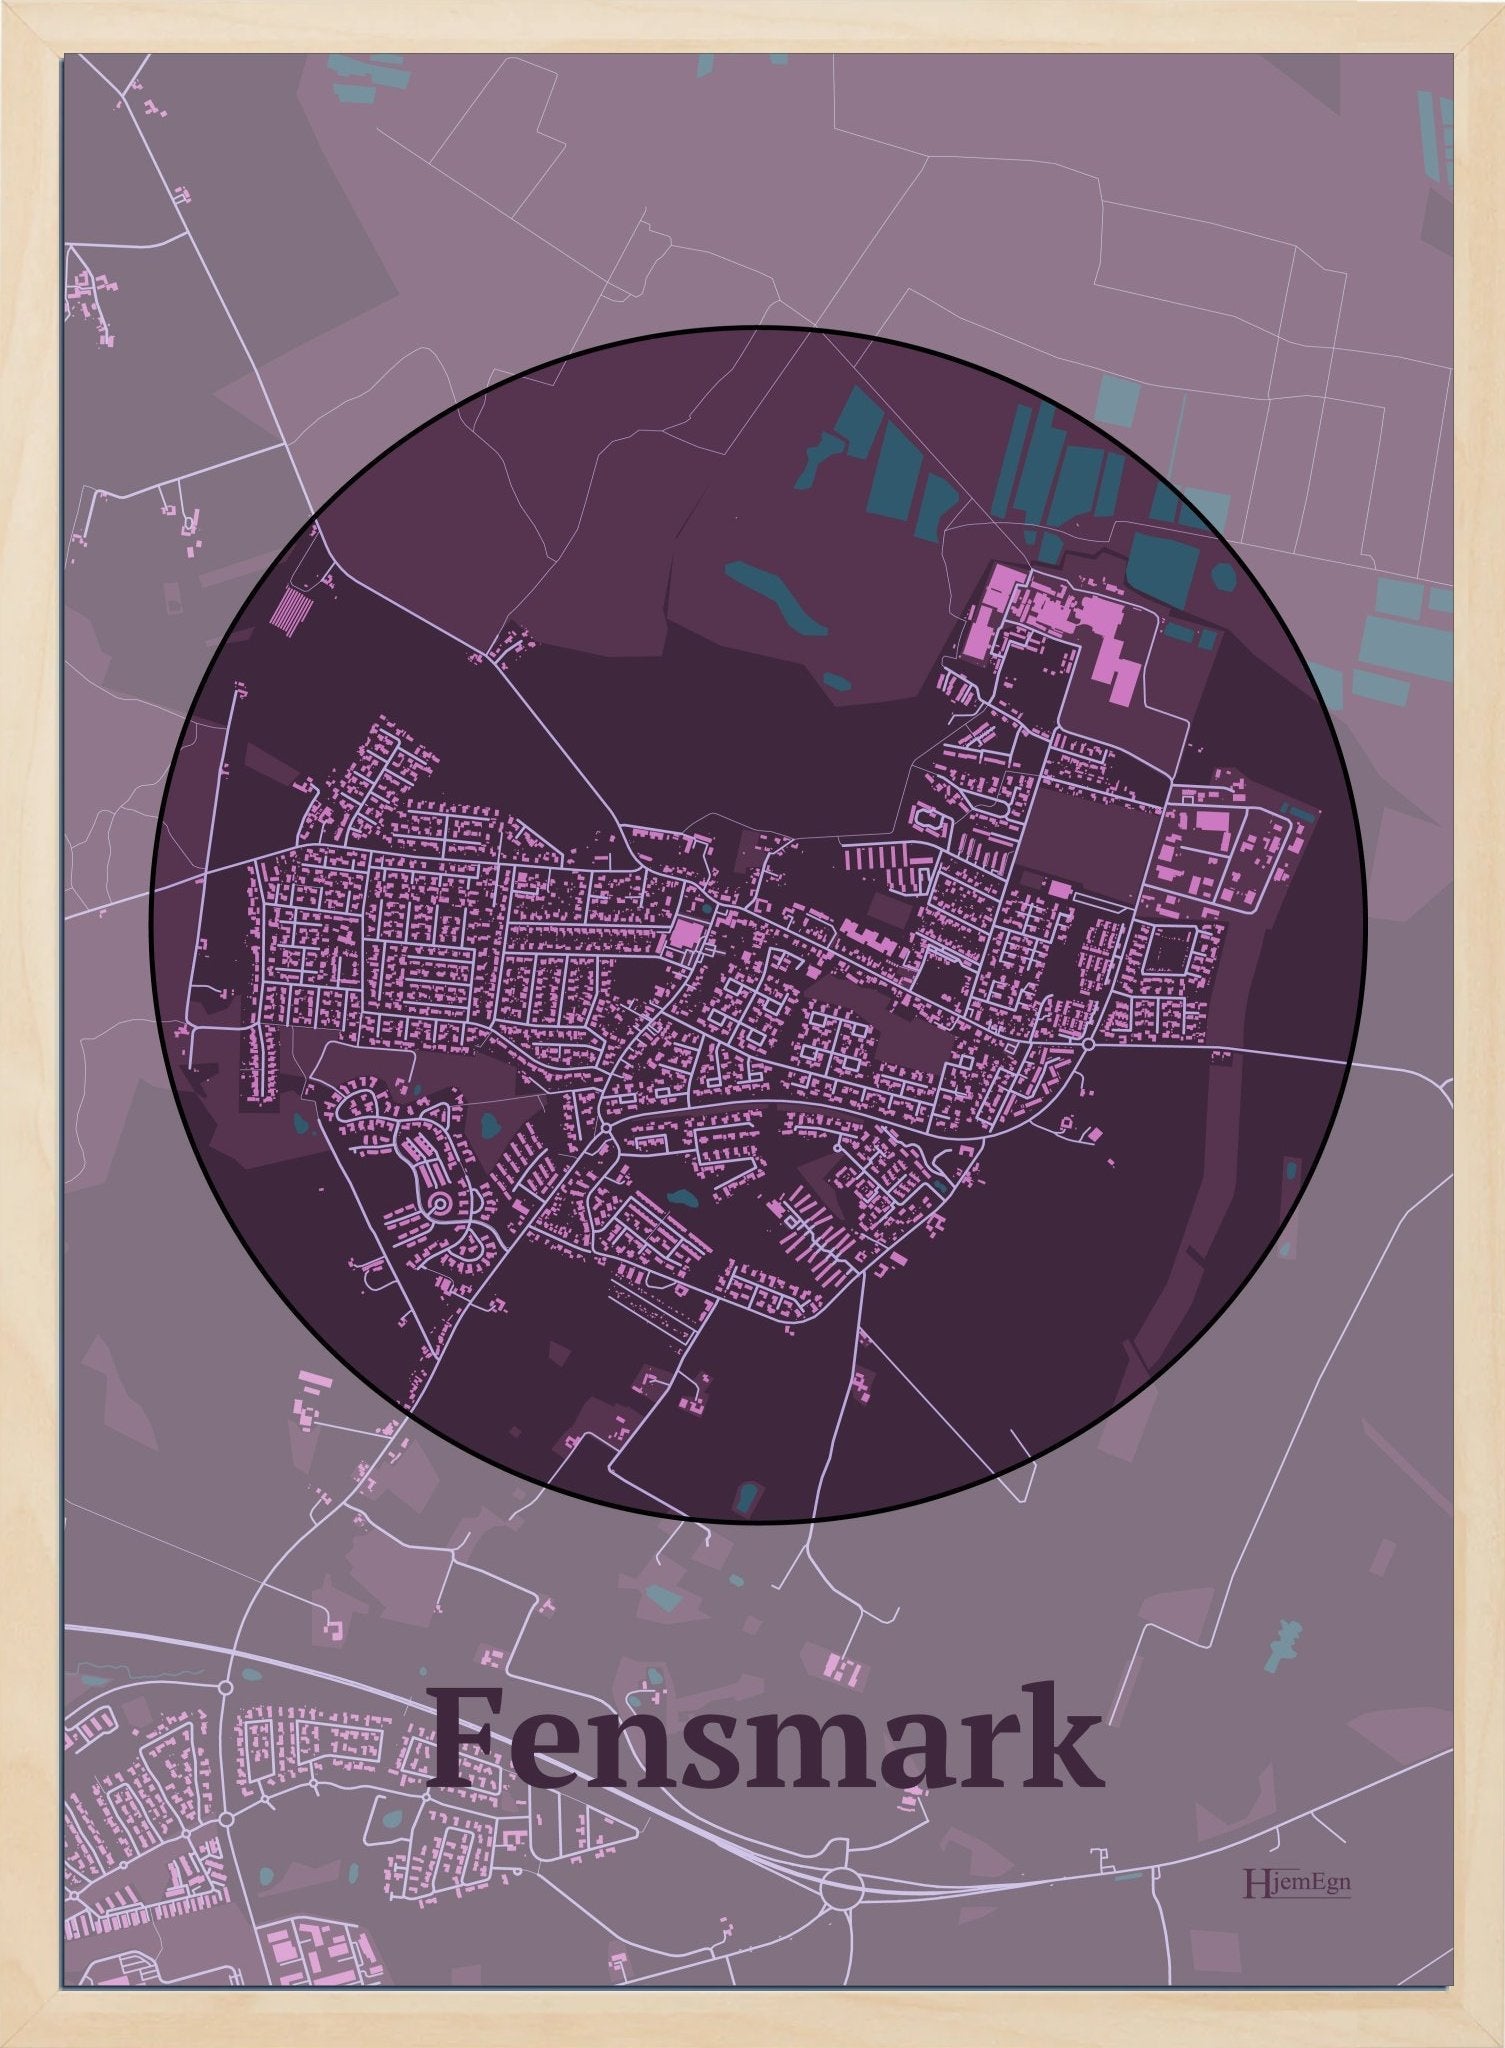 Fensmark plakat i farve mørk rød og HjemEgn.dk design centrum. Design bykort for Fensmark